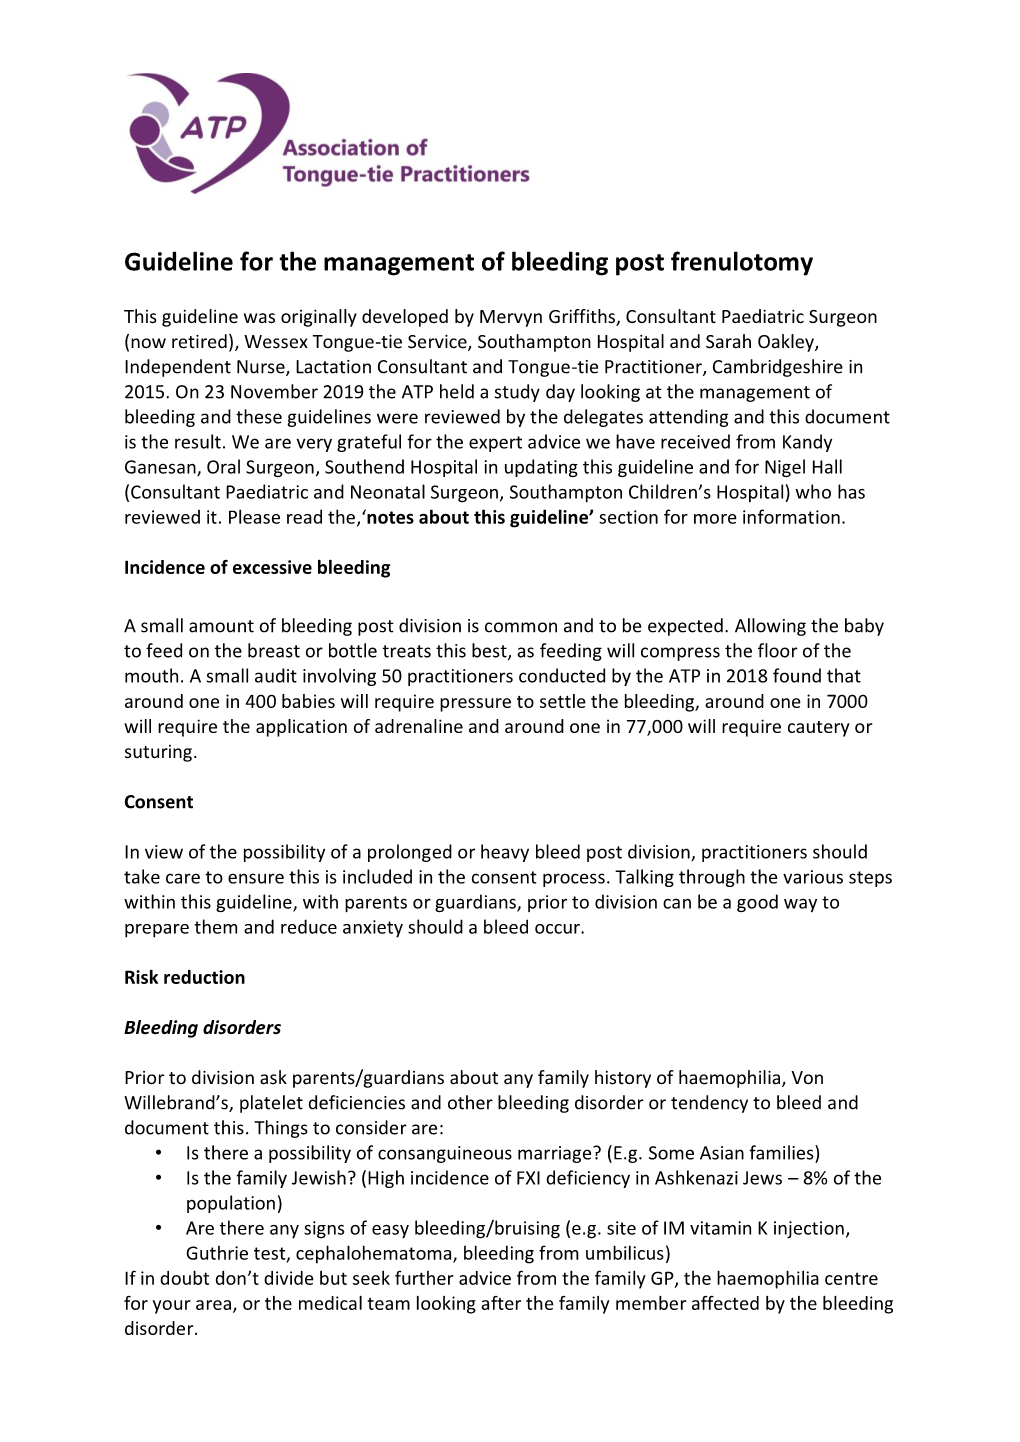 Guideline for the Management of Bleeding Post Frenulotomy